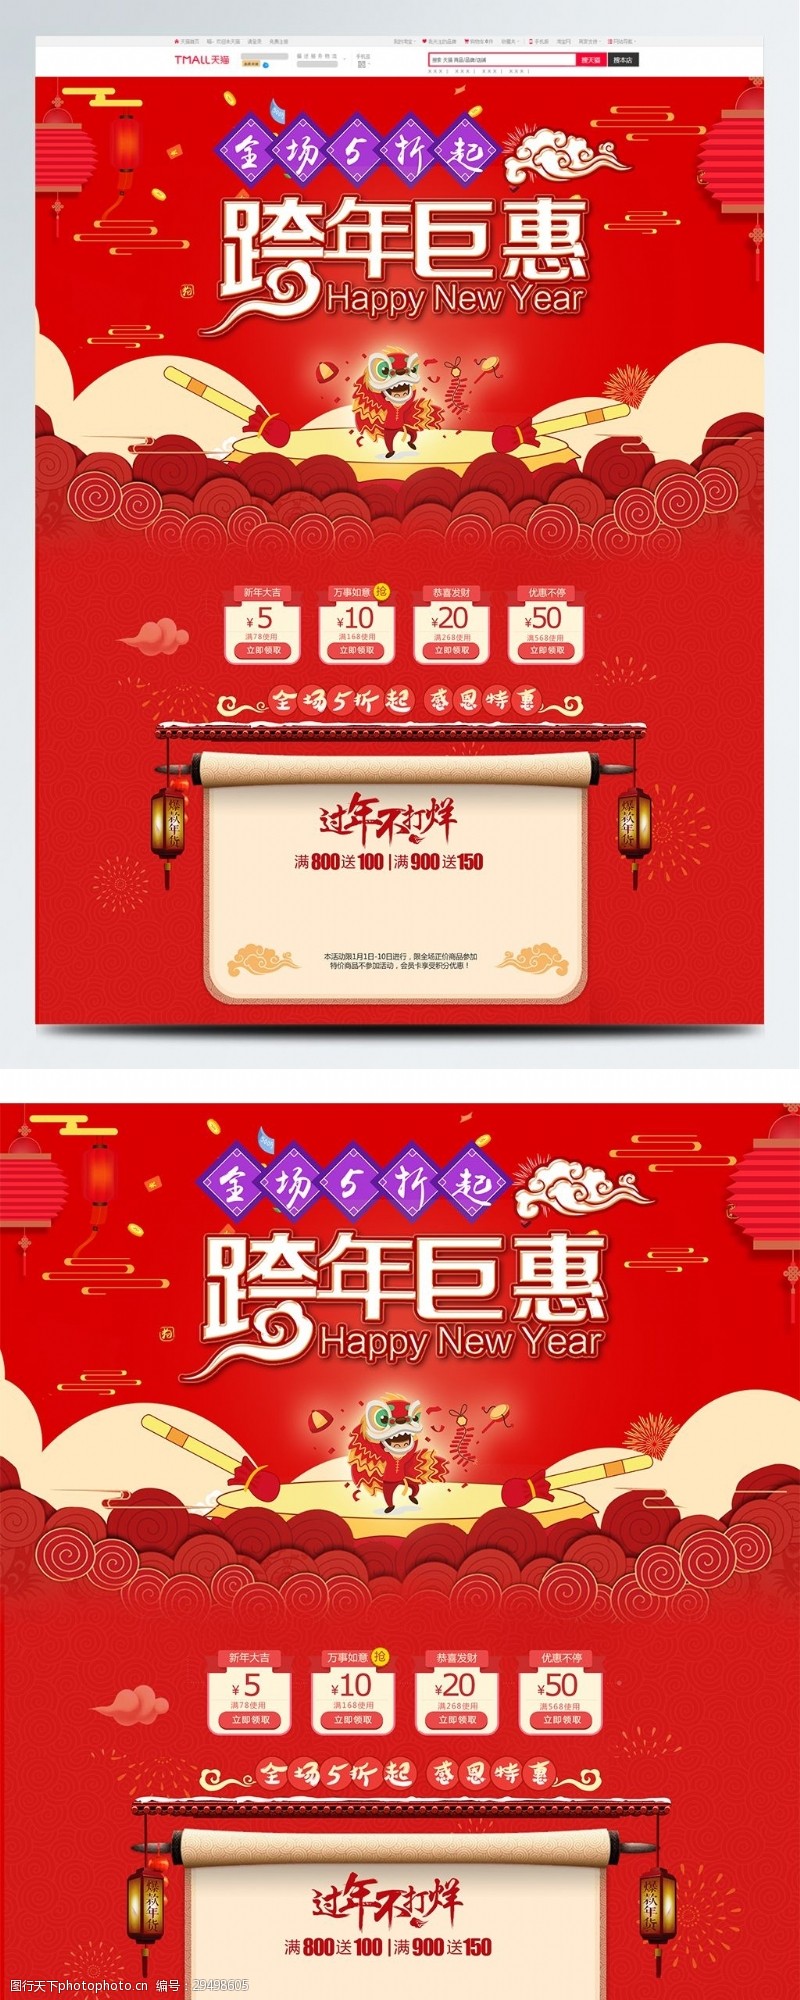 热销爆款红色喜庆电商促销天猫淘宝跨年钜惠首页模板